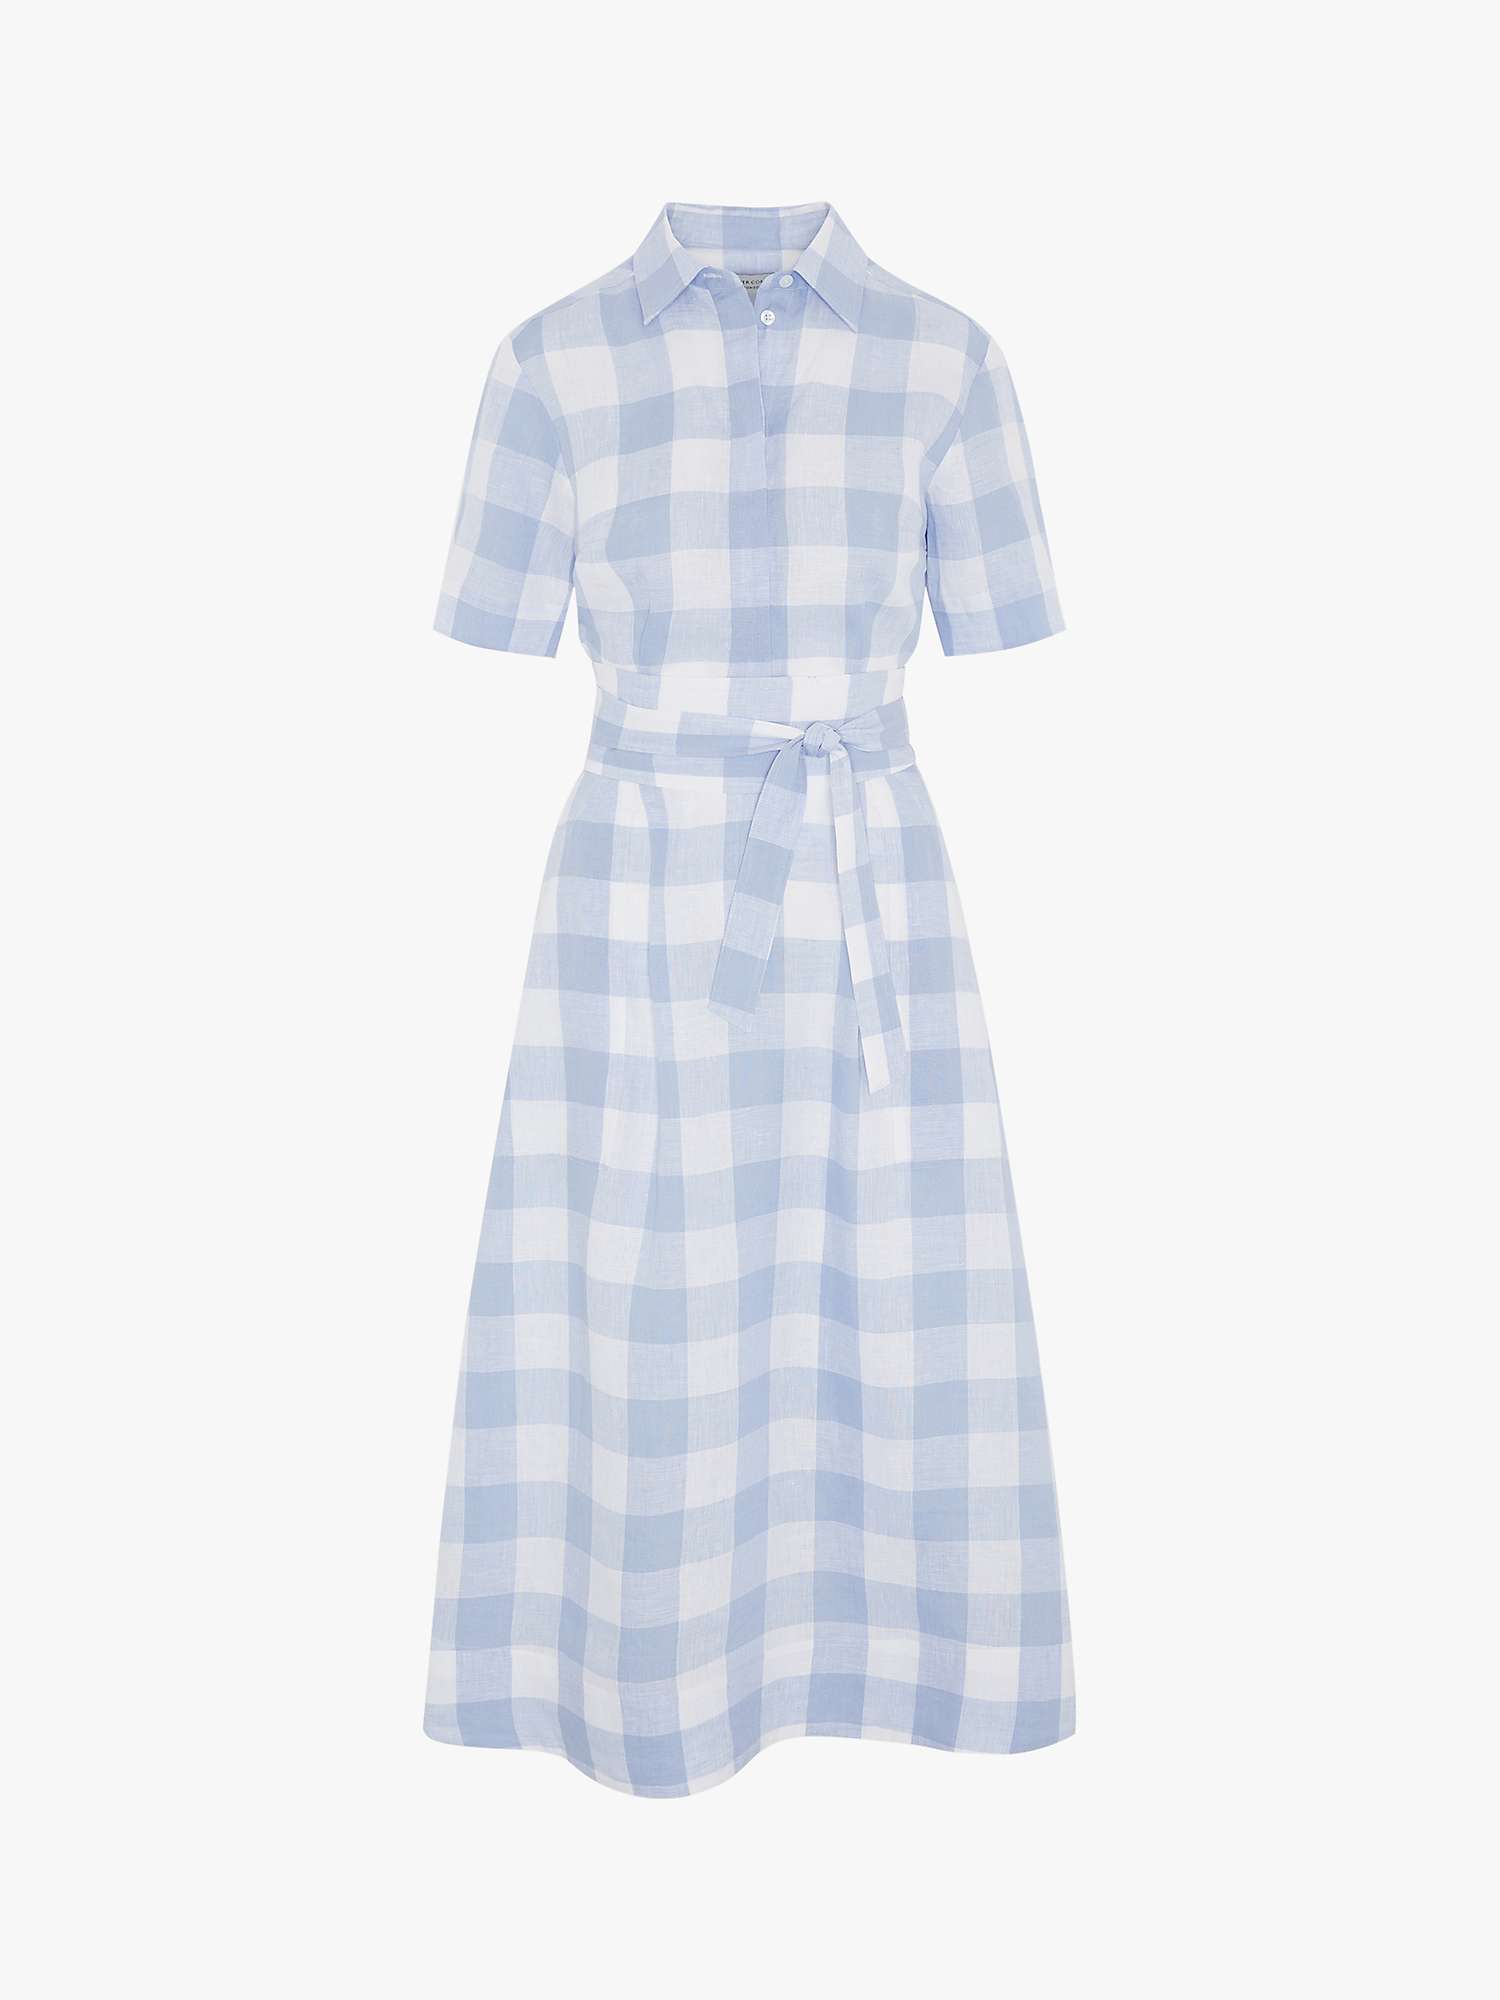 Buy Jasper Conran London Demi Linen Shirt Dress, Blue Online at johnlewis.com